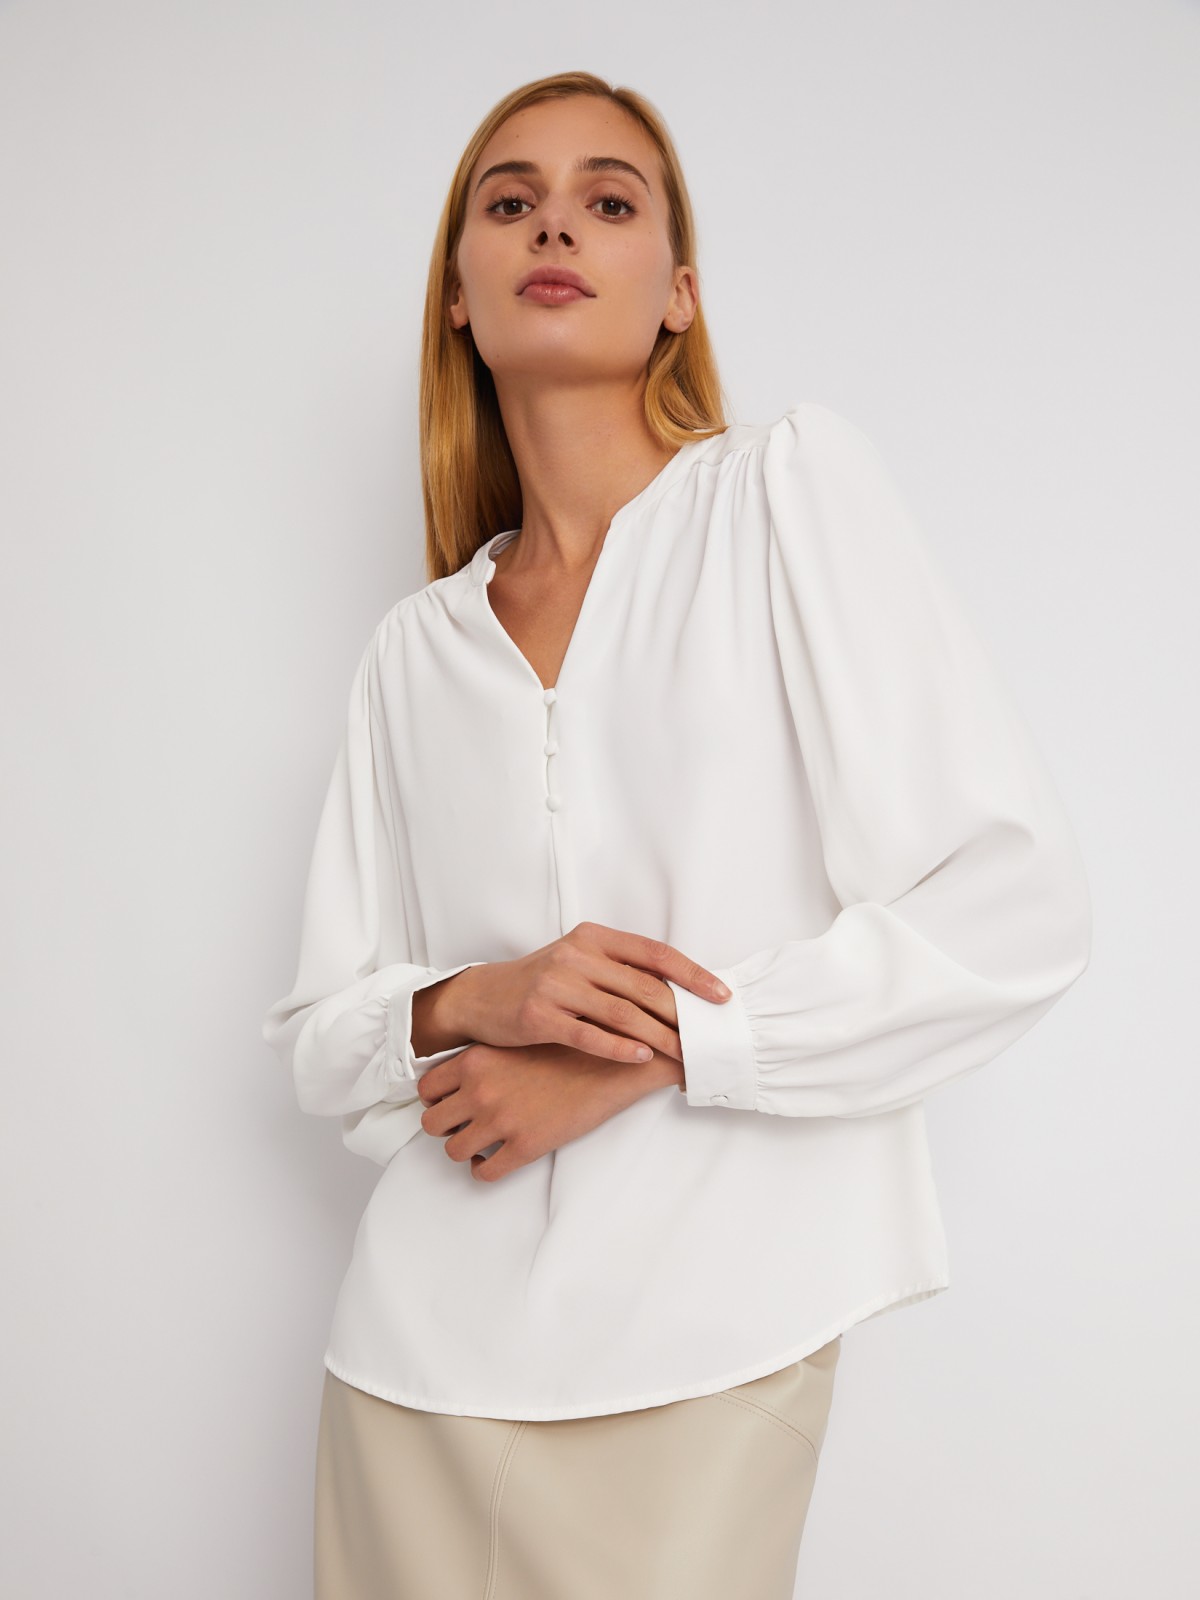 Блузка с объёмными рукавами и V-образным вырезом на груди zolla 024121159122, цвет молоко, размер XS - фото 4